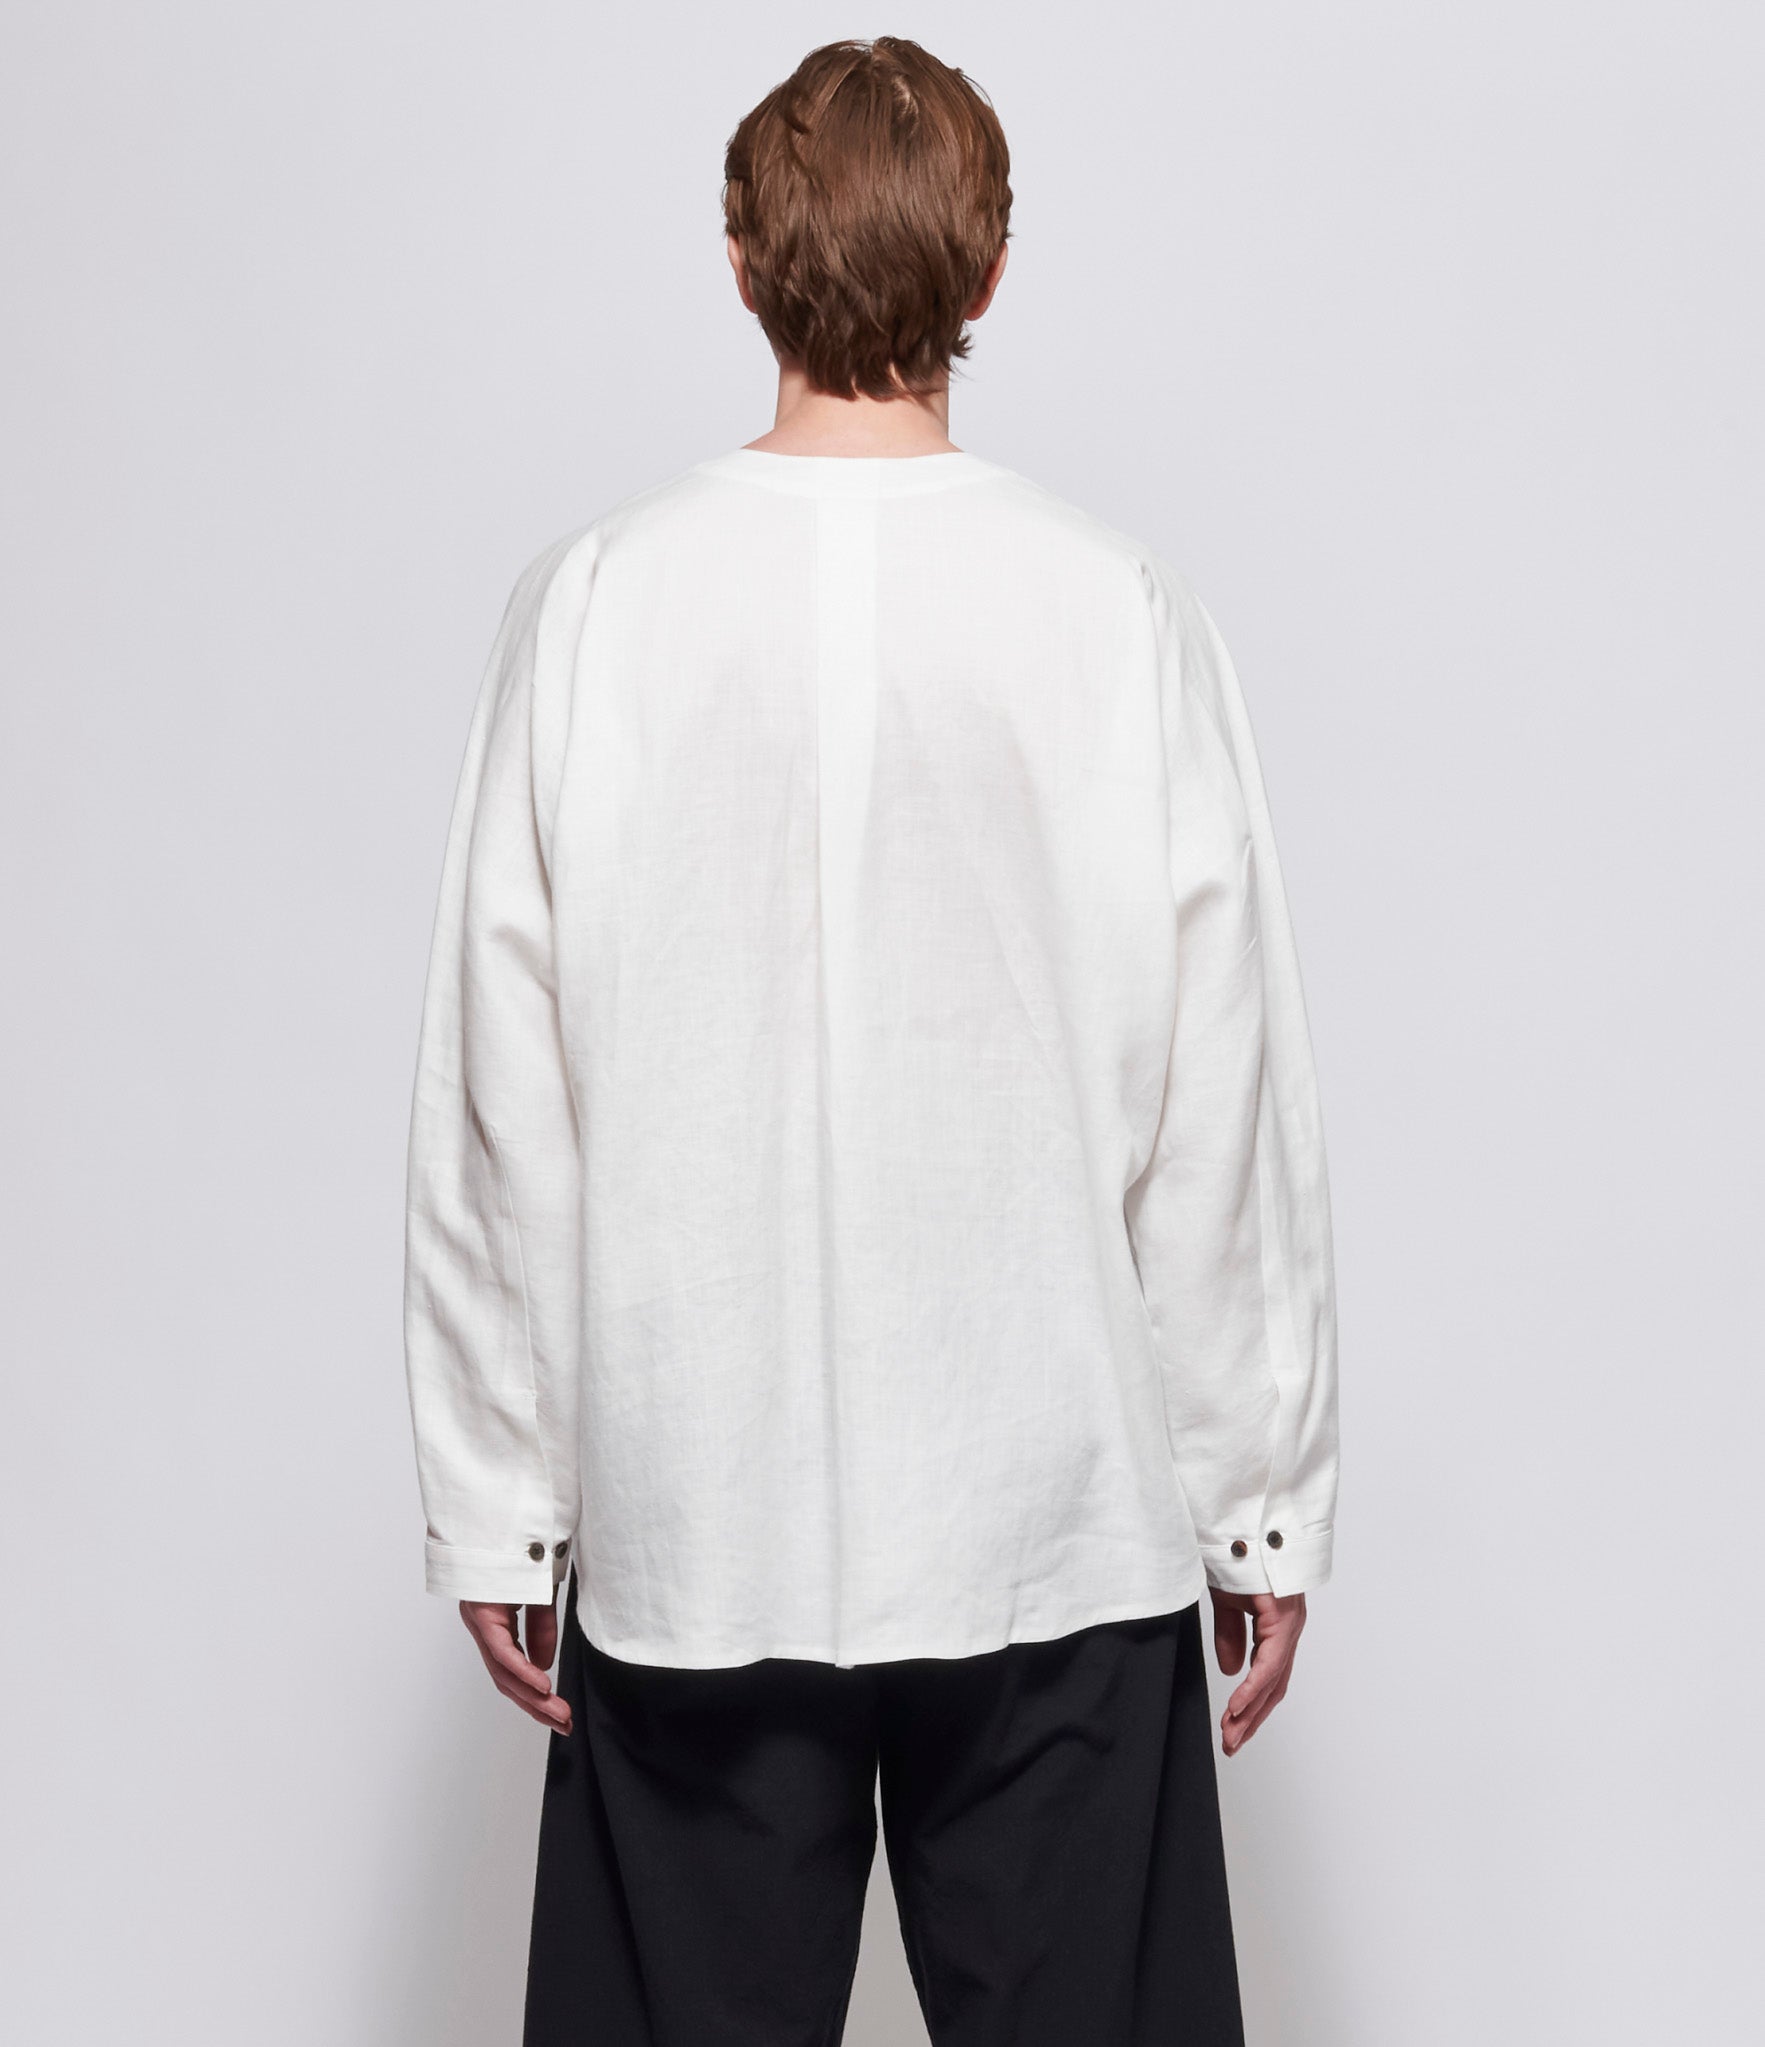 Jan Jan Van Essche #99 Shirt White